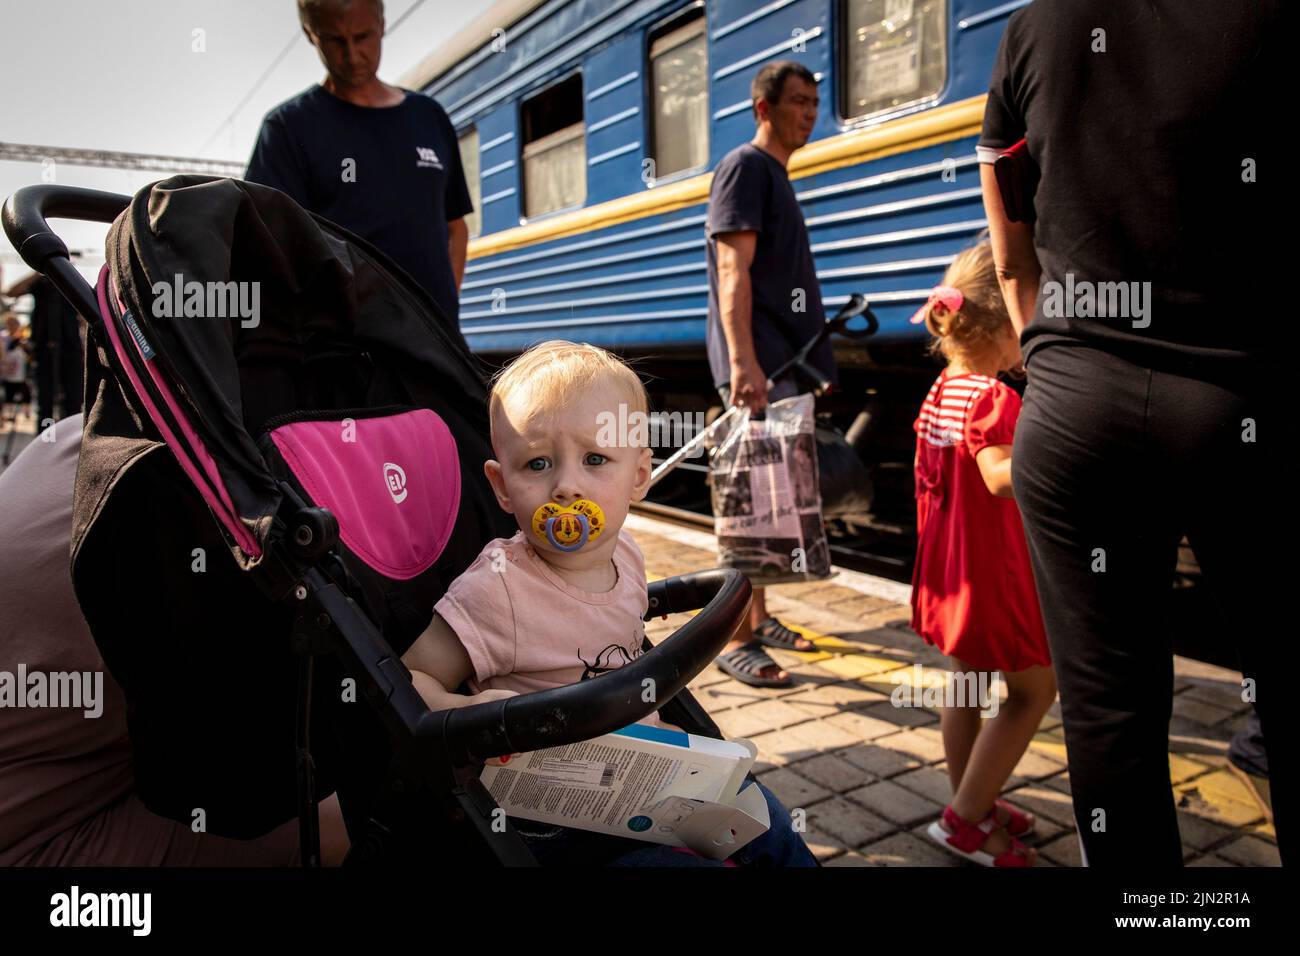 Ein Baby, das im Kinderwagen sitzt, wartet auf den Evakuierungszug mit seinen Eltern am Bahnhof Pokrovsk. Inmitten der intensivierten Kämpfe im östlichen Teil der Ukraine intensiviert die Ostukraine nun ihre zivile Evakuierung, da Millionen ukrainischer Familien aus dem immer näher rückt Krieg evakuiert wurden, da viele von ihnen in den westlichen Teil des Landes verlagert werden.Laut den Vereinten Nationen werden die meisten von ihnen in den Westen des Landes umgesiedelt. Mindestens 12 Millionen Menschen sind seit dem russischen Einmarsch in die Ukraine aus ihrer Heimat geflohen, während sieben Millionen Menschen innerhalb des Landes vertrieben werden. (Foto von Alex Chan Stockfoto